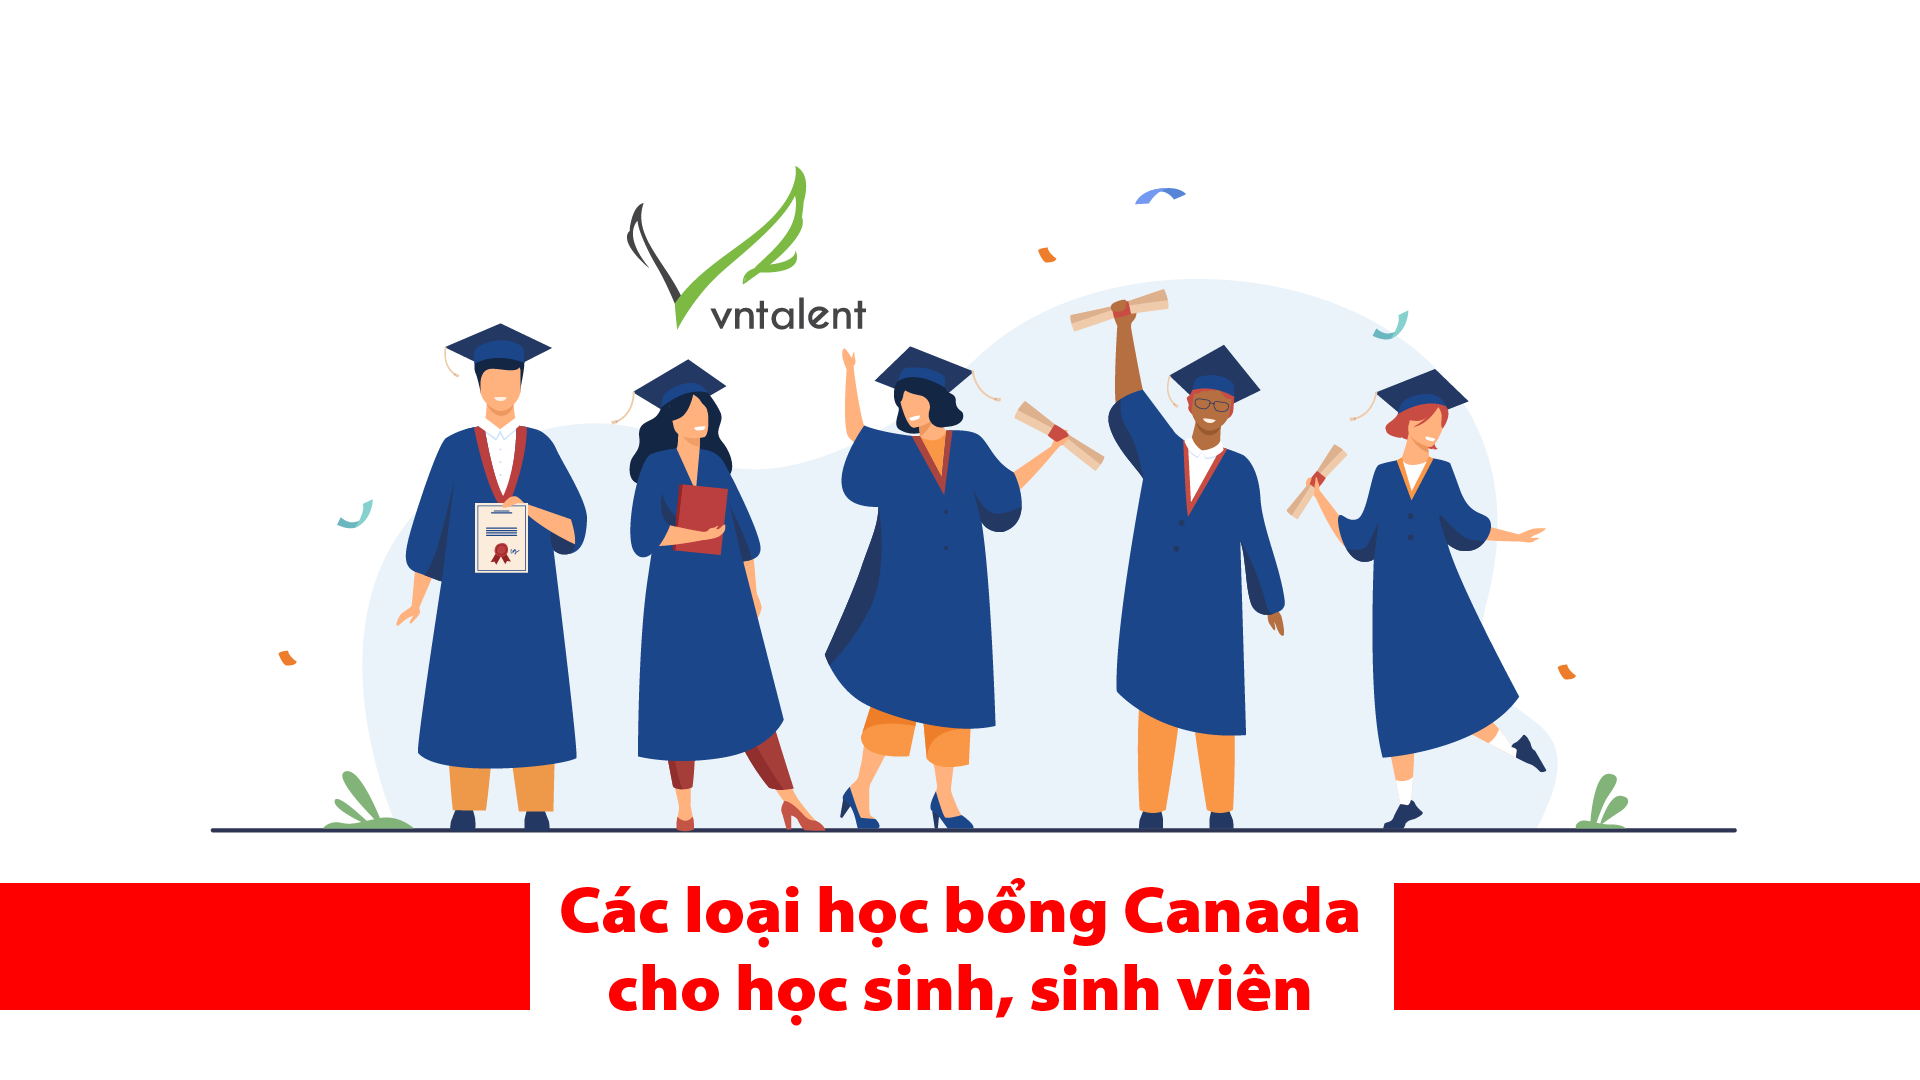 [Canada] Các loại học bổng Canada cho học sinh, sinh viên